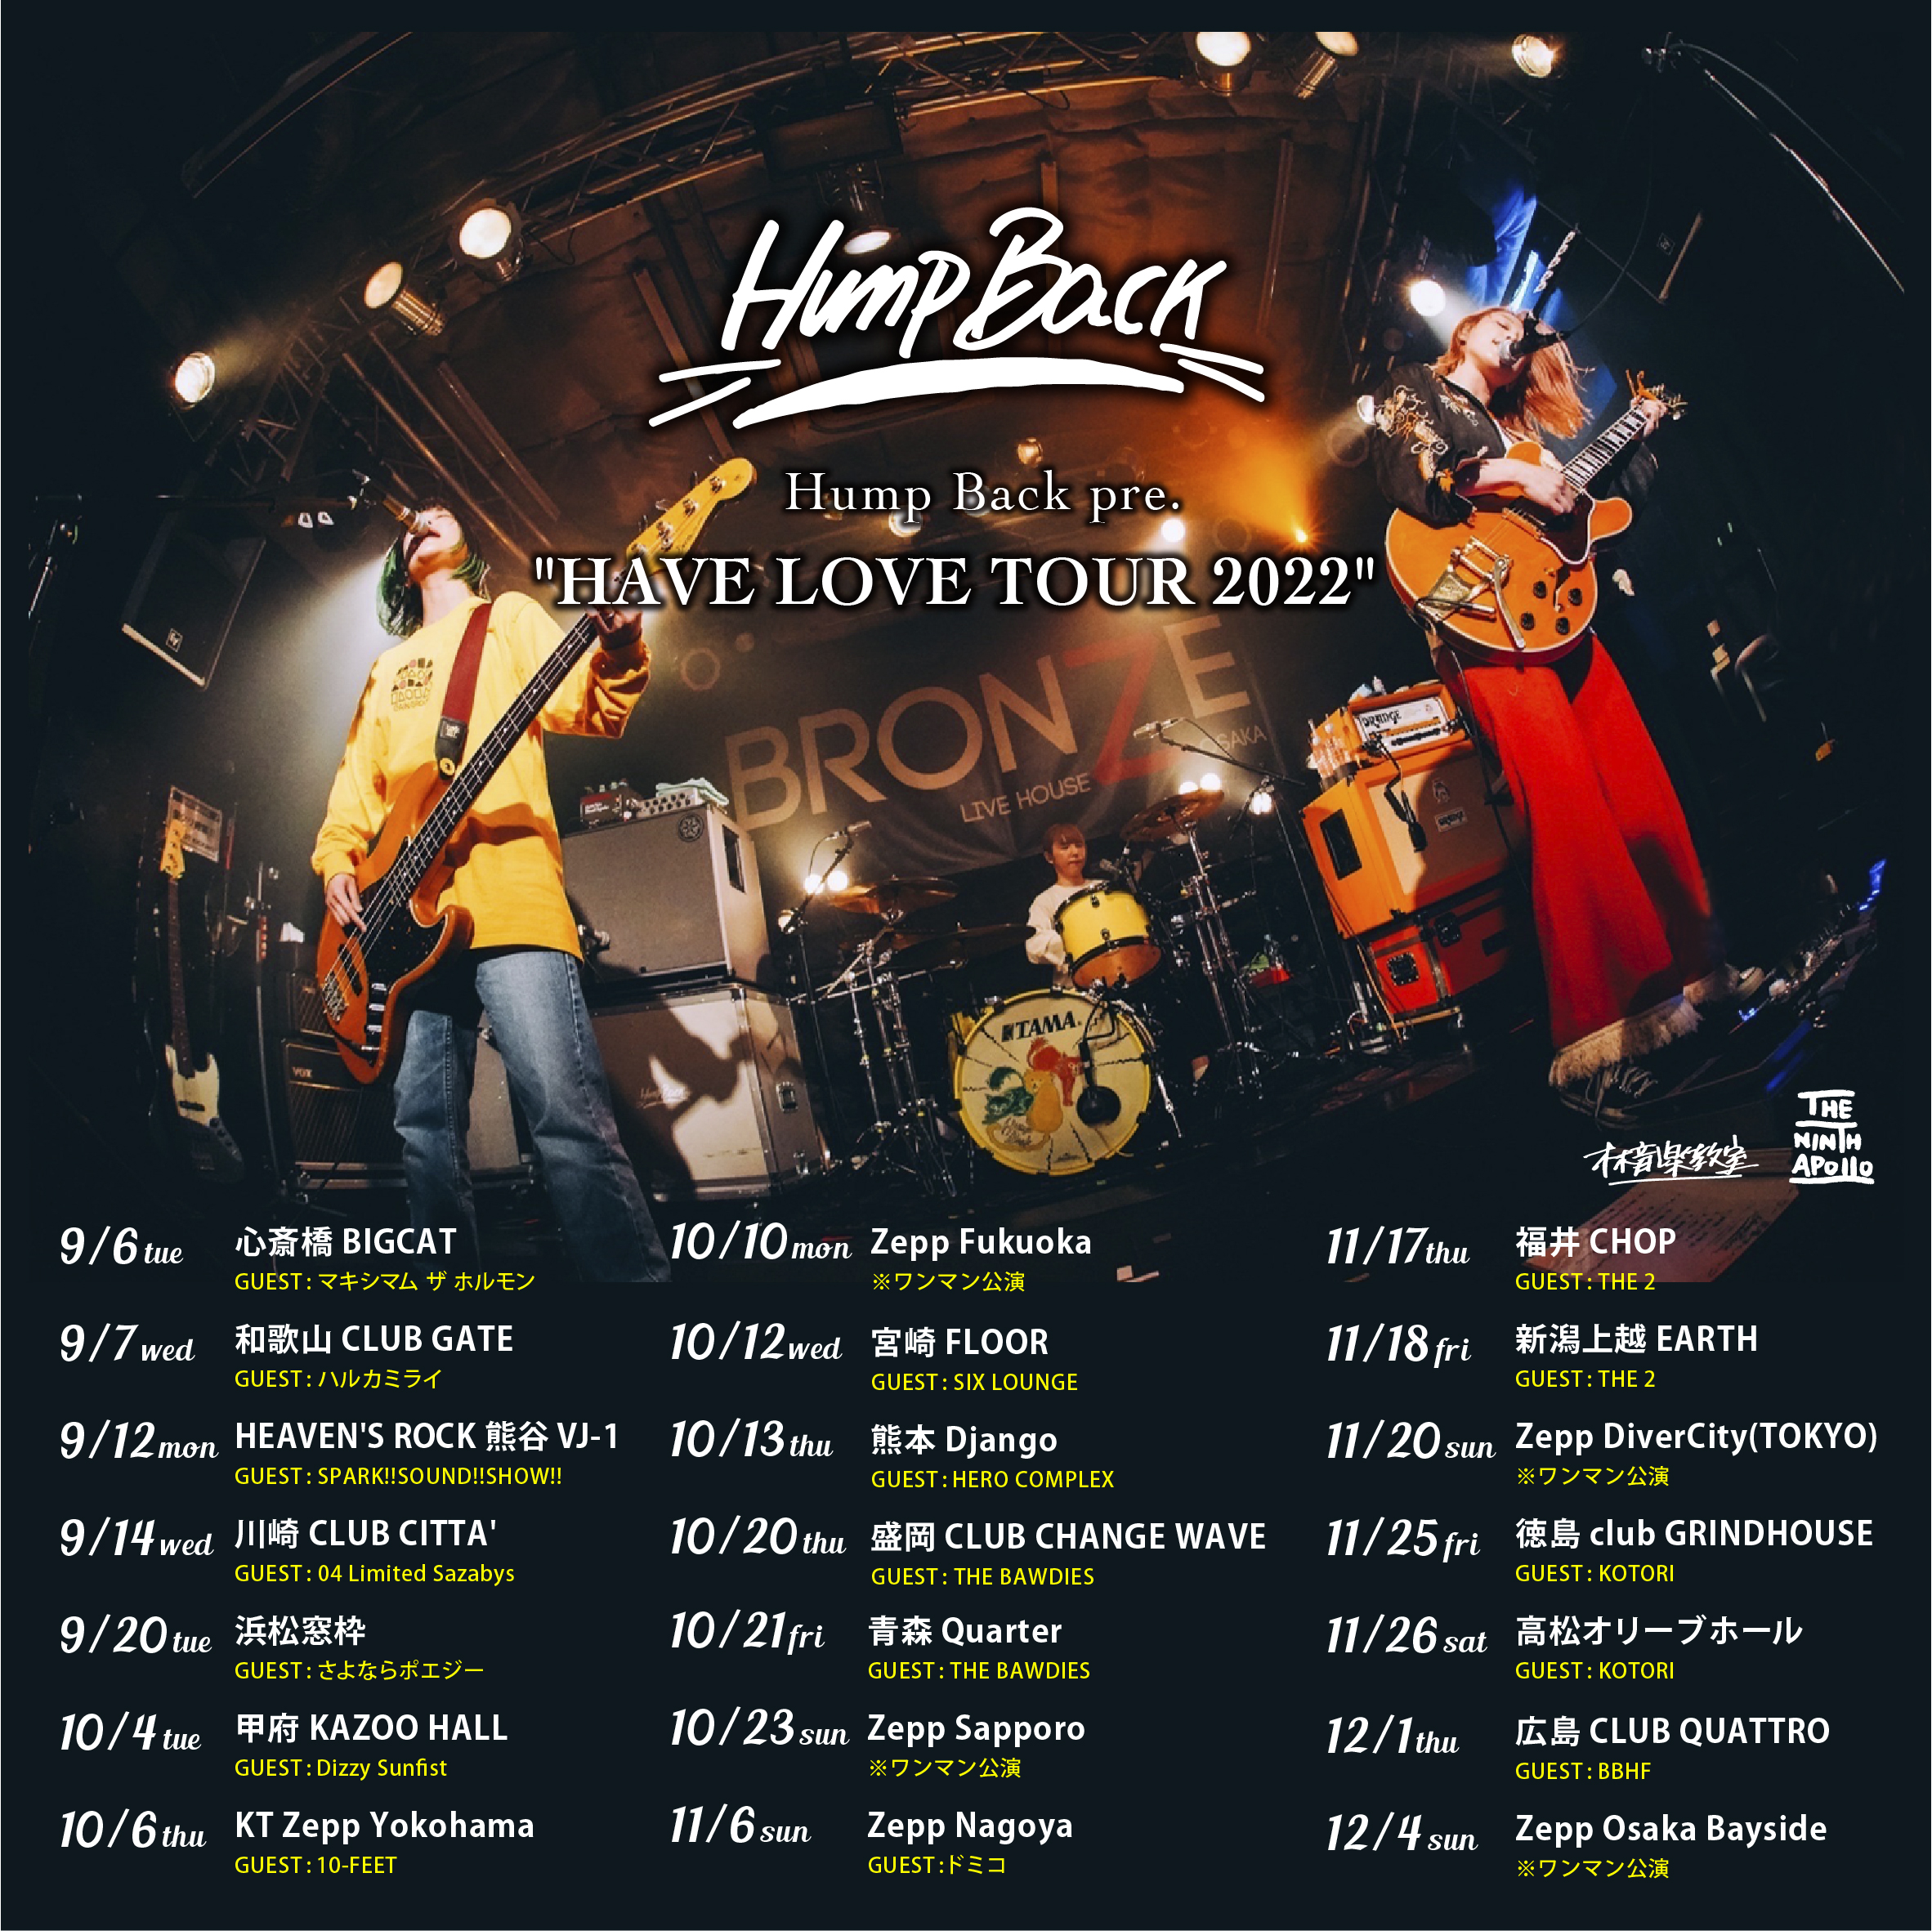 【神奈川】Hump Back "HAVE LOVE TOUR 2022" (CLUB CITTA')